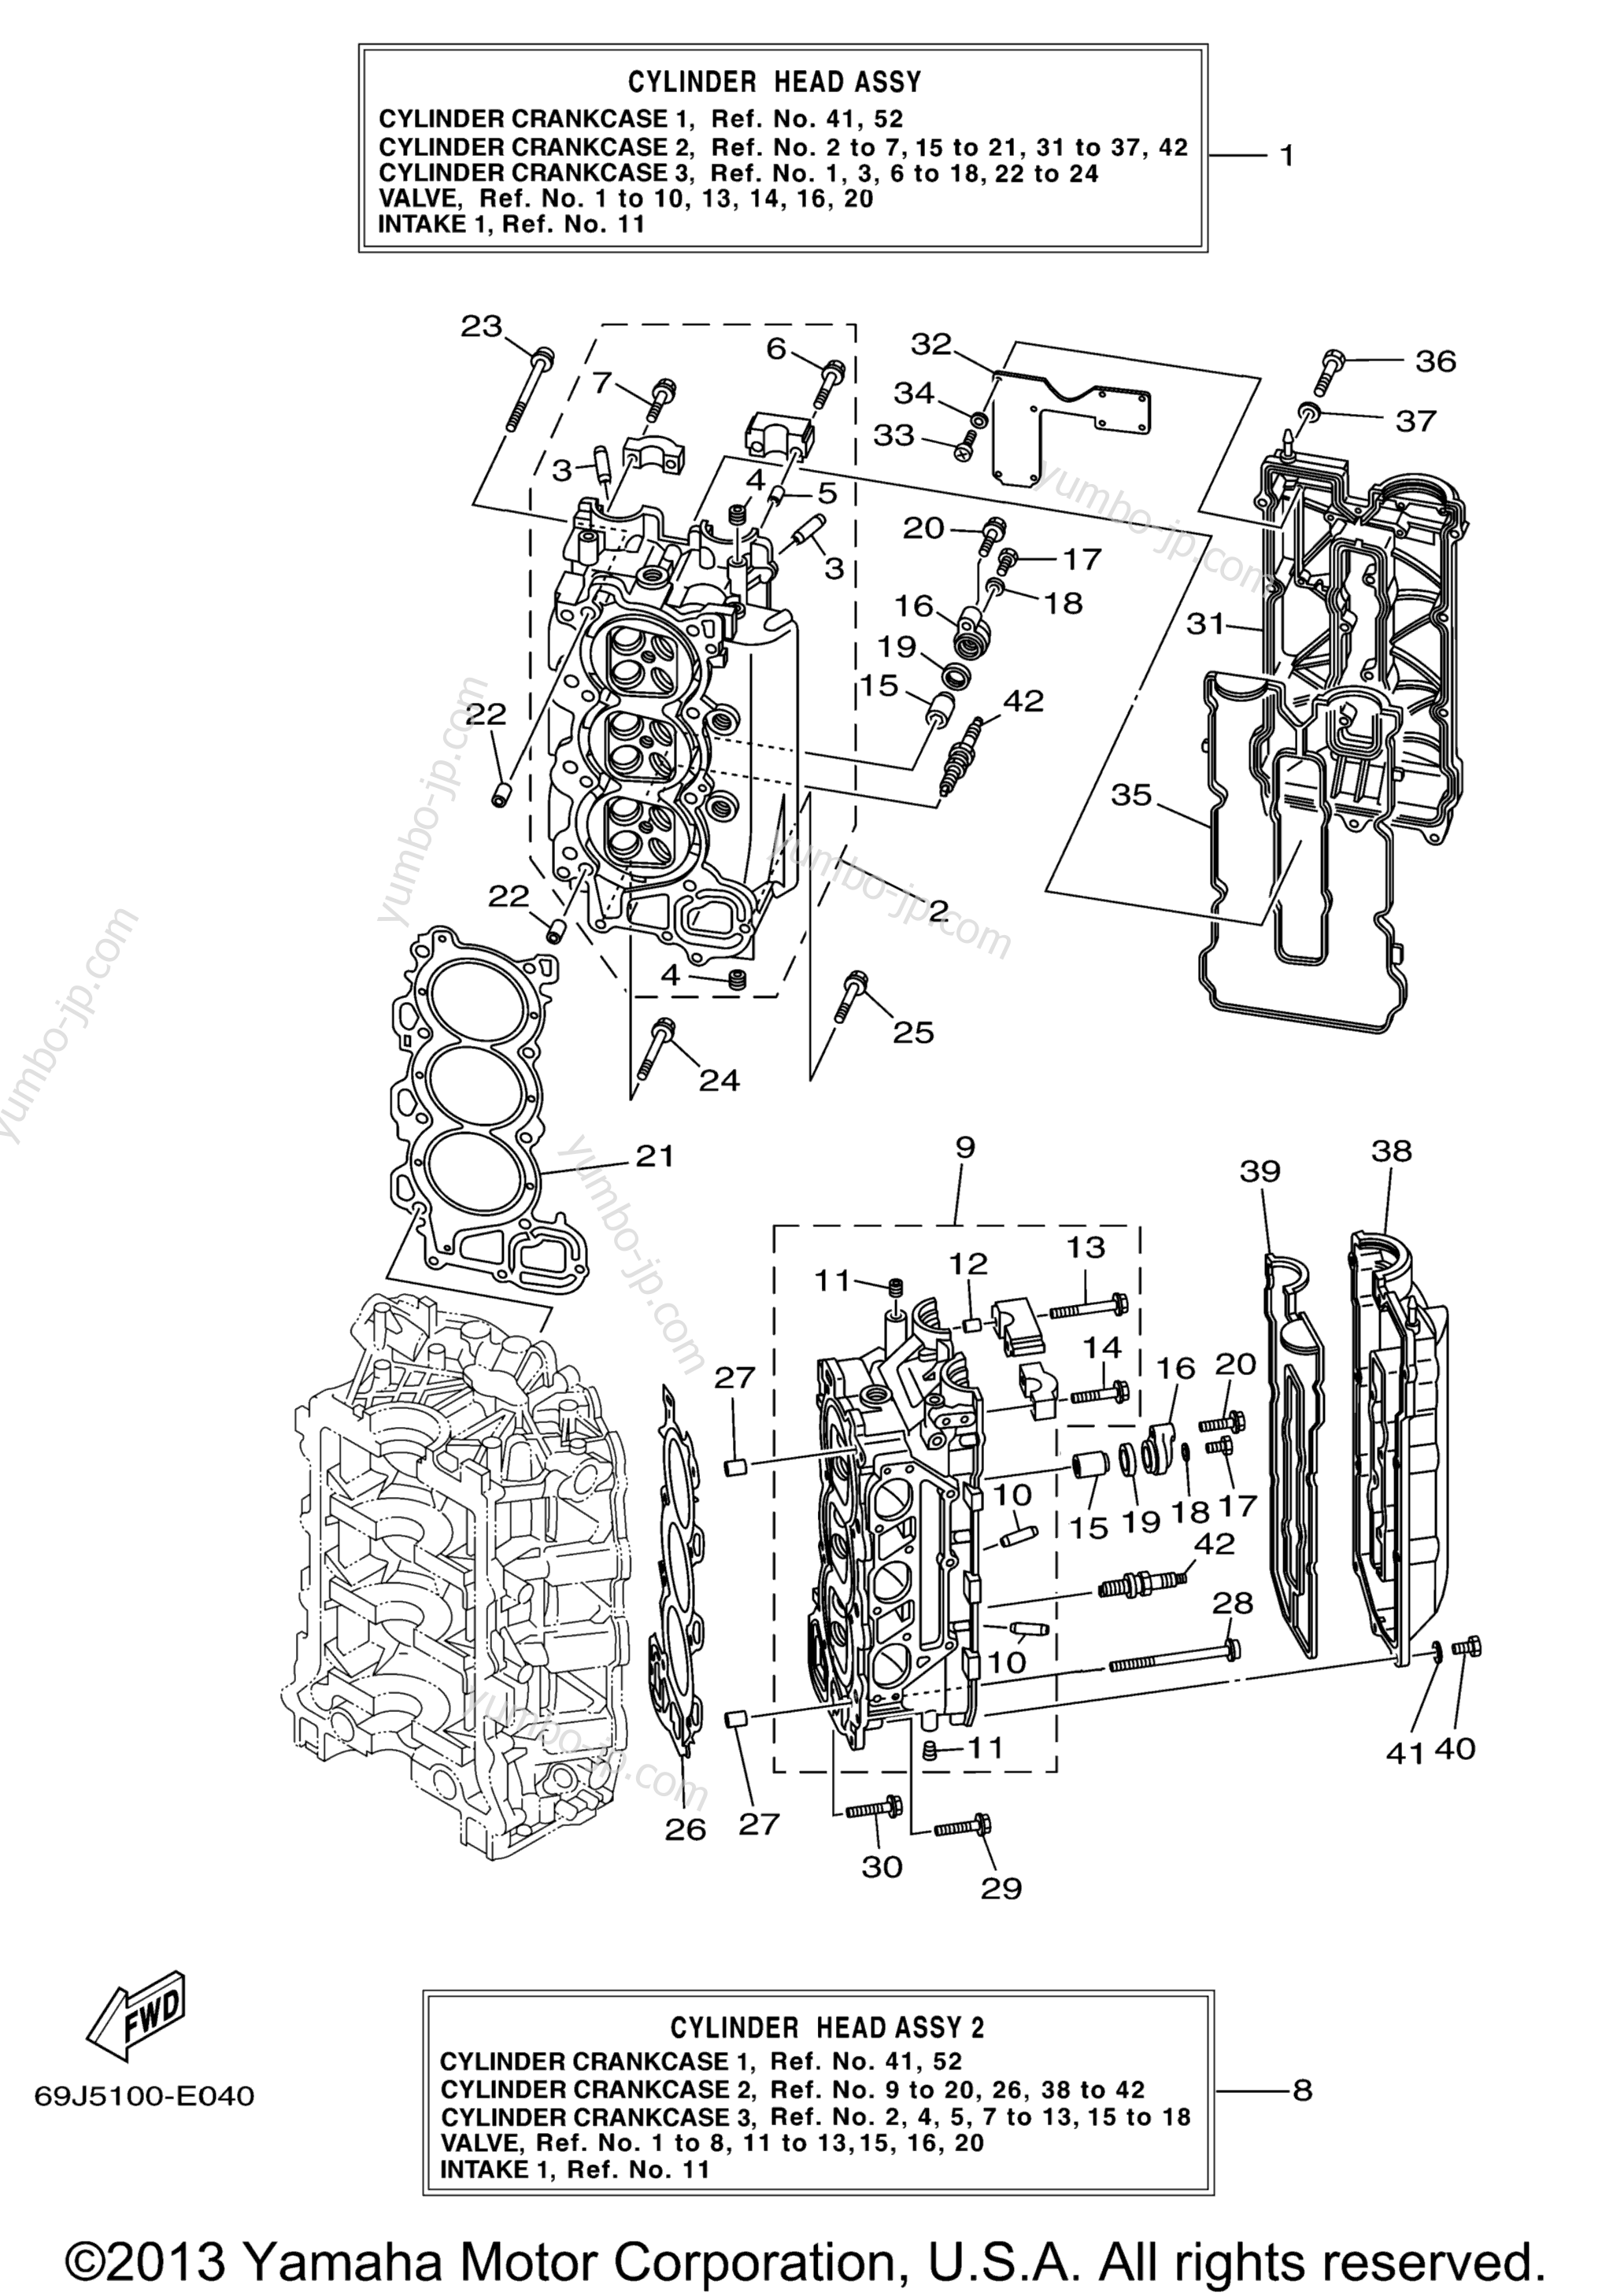 Cylinder Crankcase 2 для лодочных моторов YAMAHA F200TXR (0405) 69J-1021983~1027874 LF225TXR_TUR 69K-1006907~10008 2006 г.